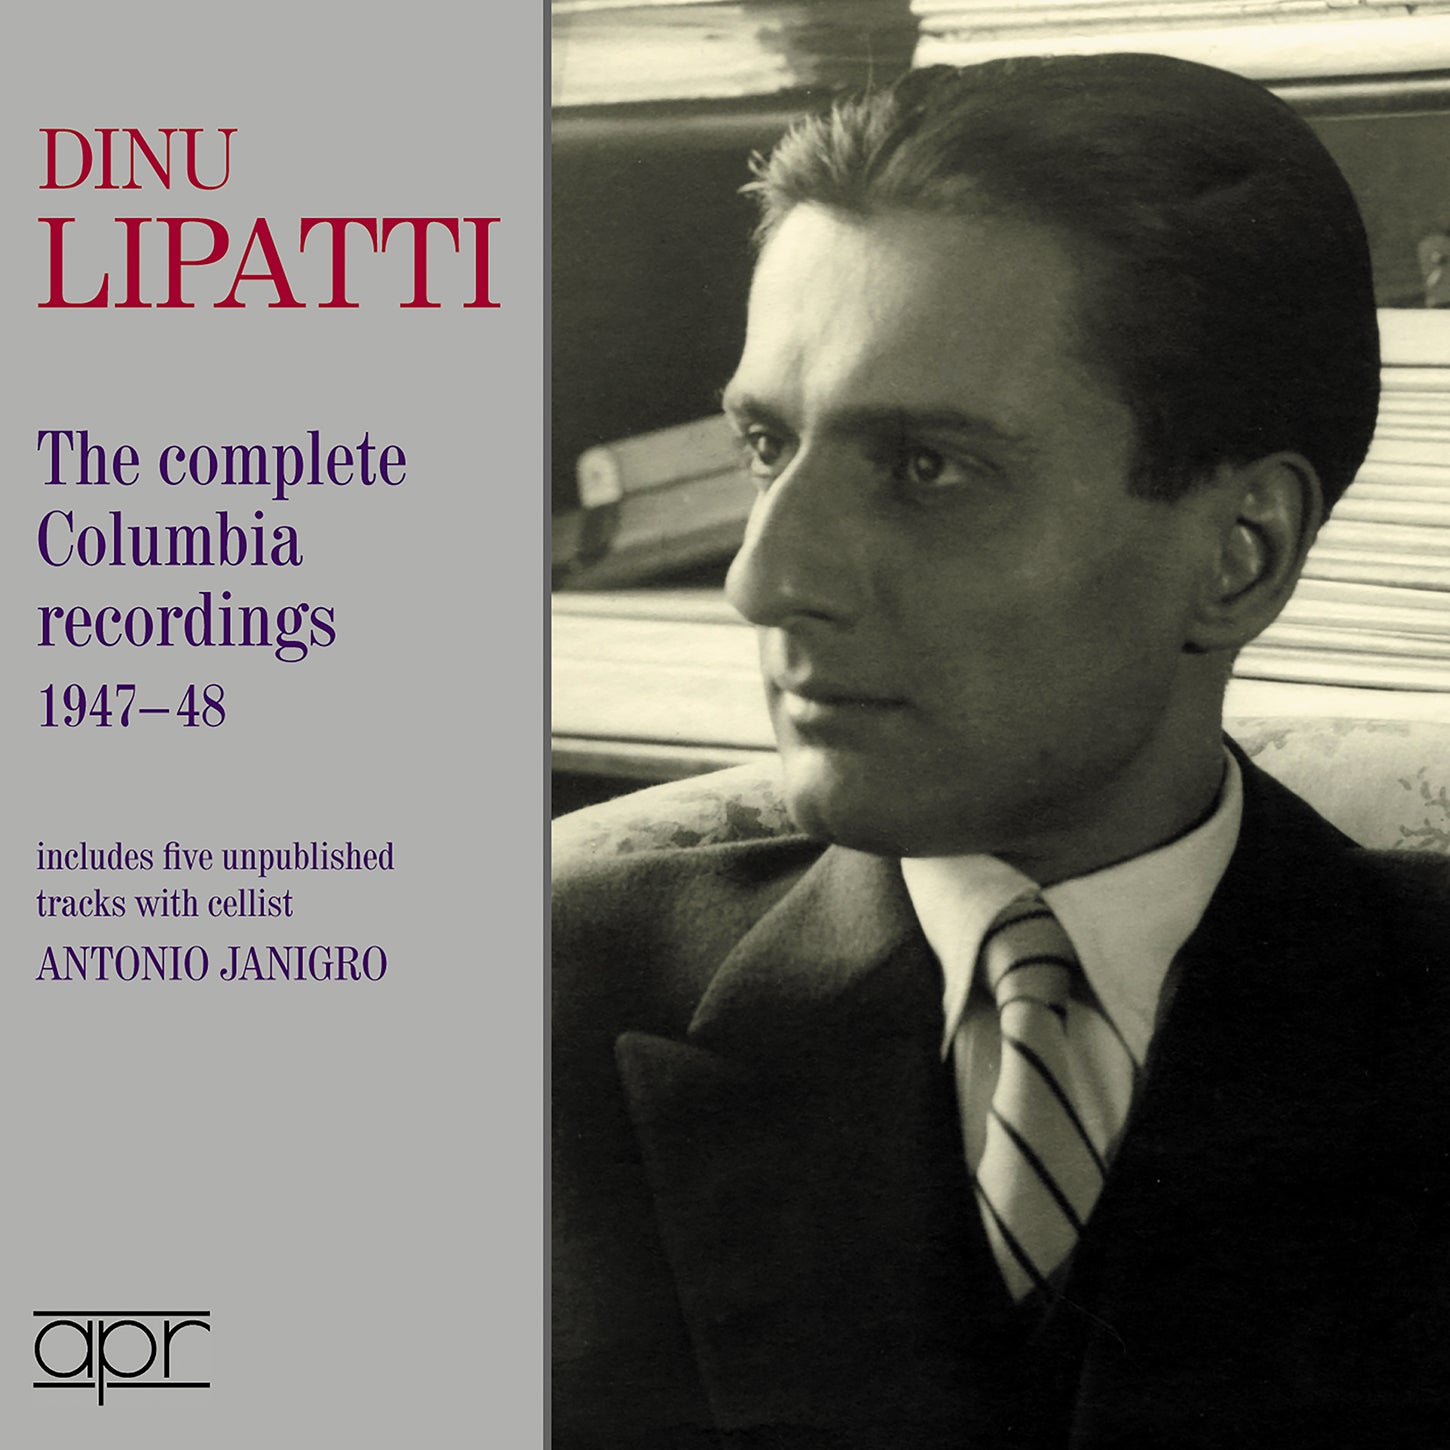 Dino Lipatti: The Complete Columbia Recordings 1947-48